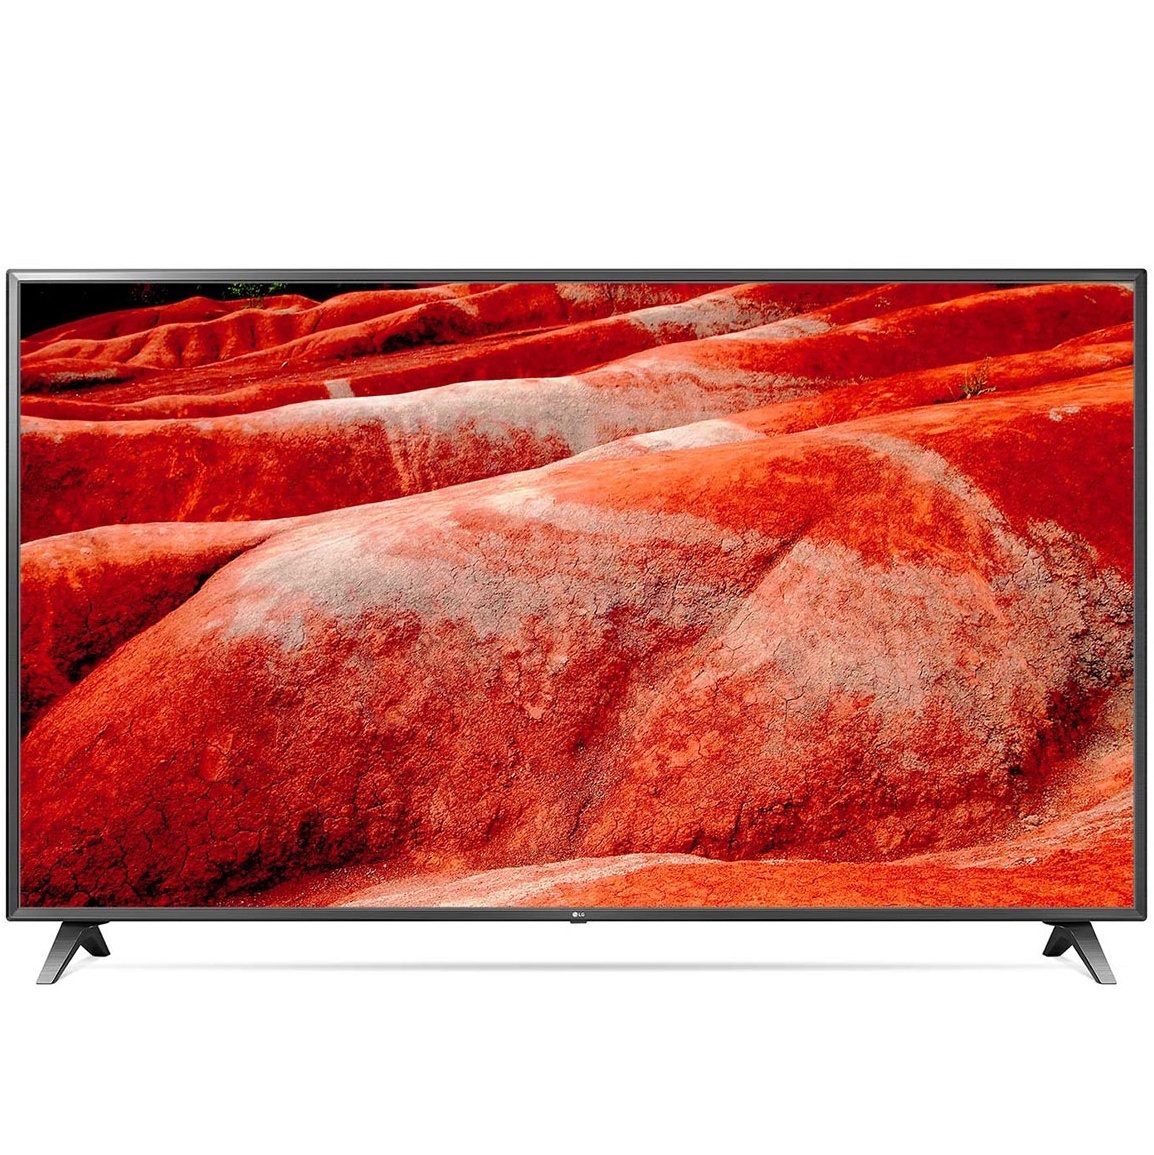 LG UHD TV 75 inch 4K Smart UHD TV HDR 75UM7500PTA chính hãng